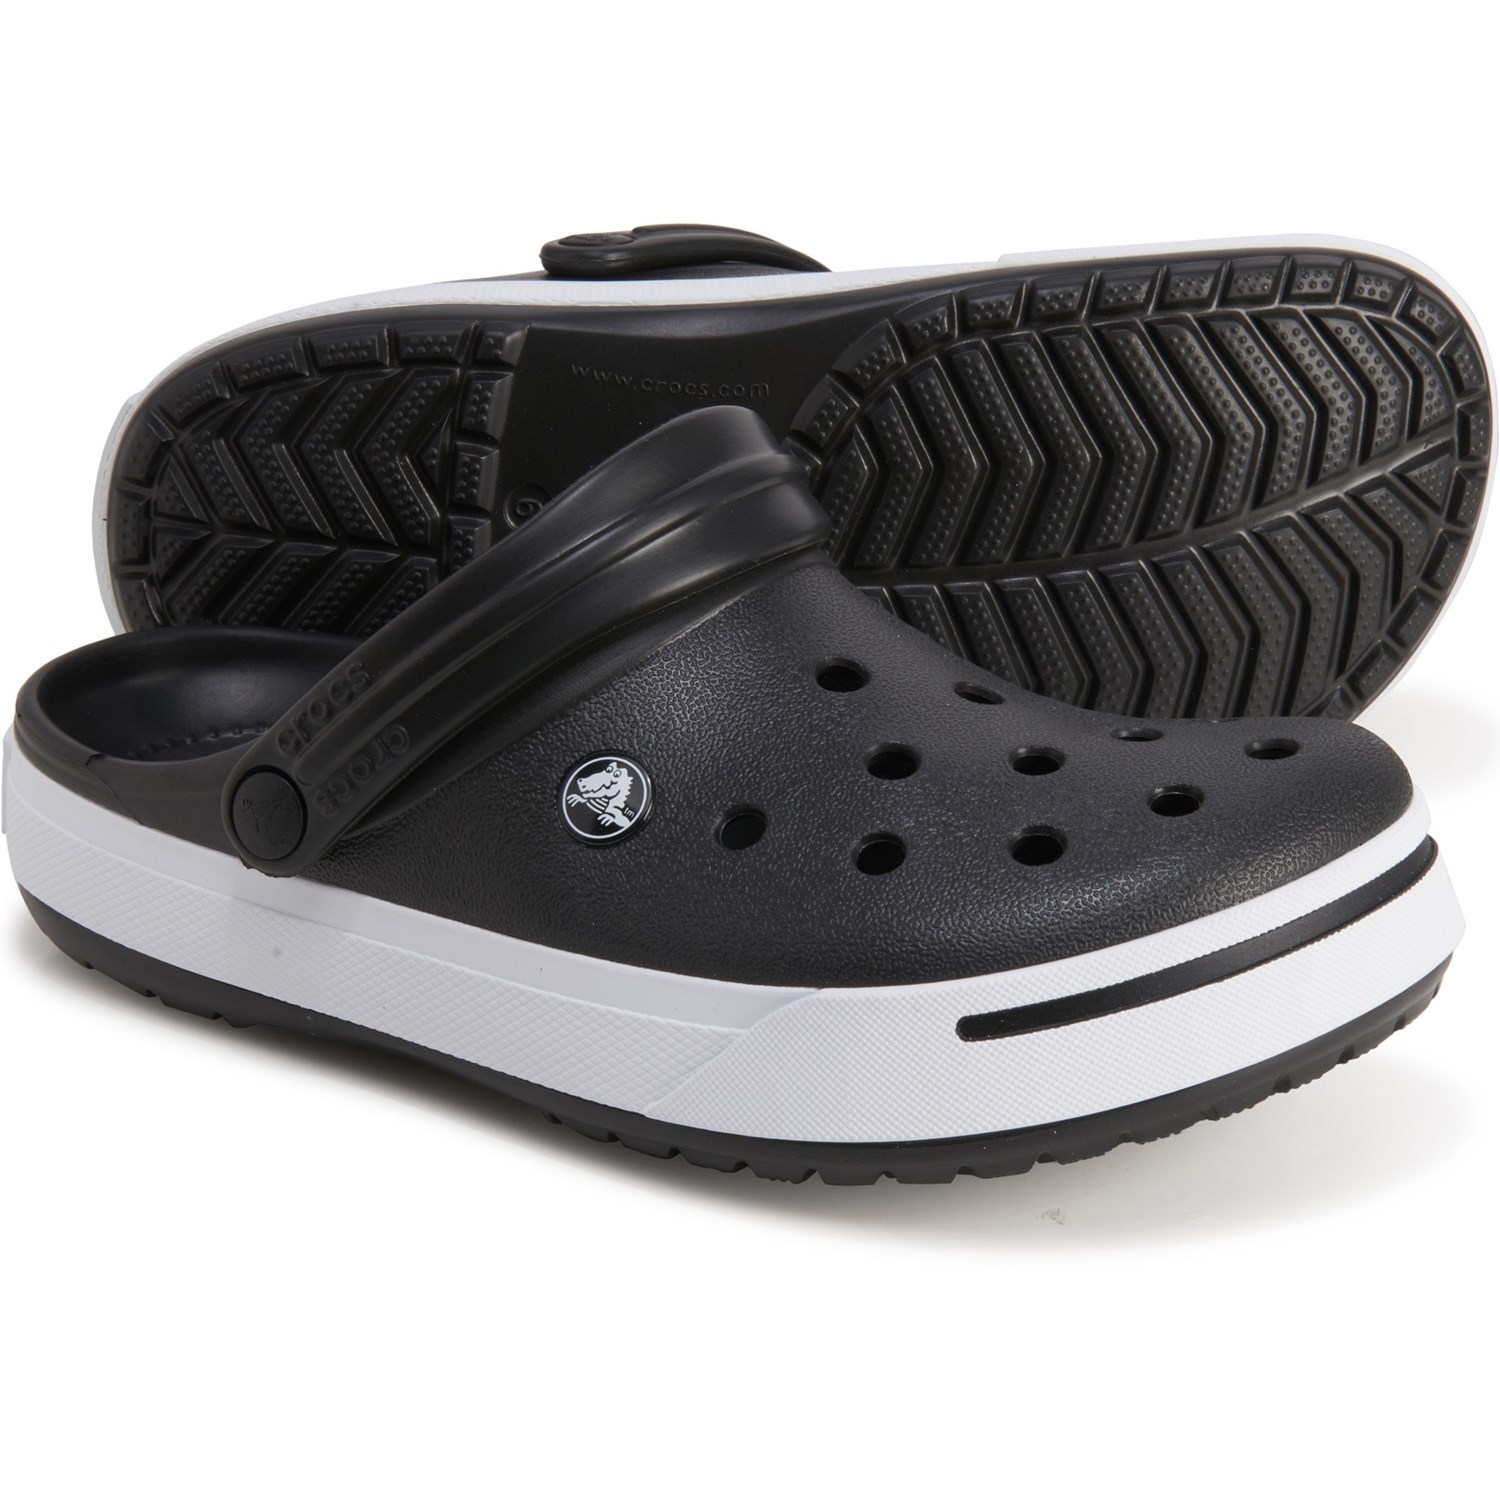 Crocs Crocband II Clogs (For Women)